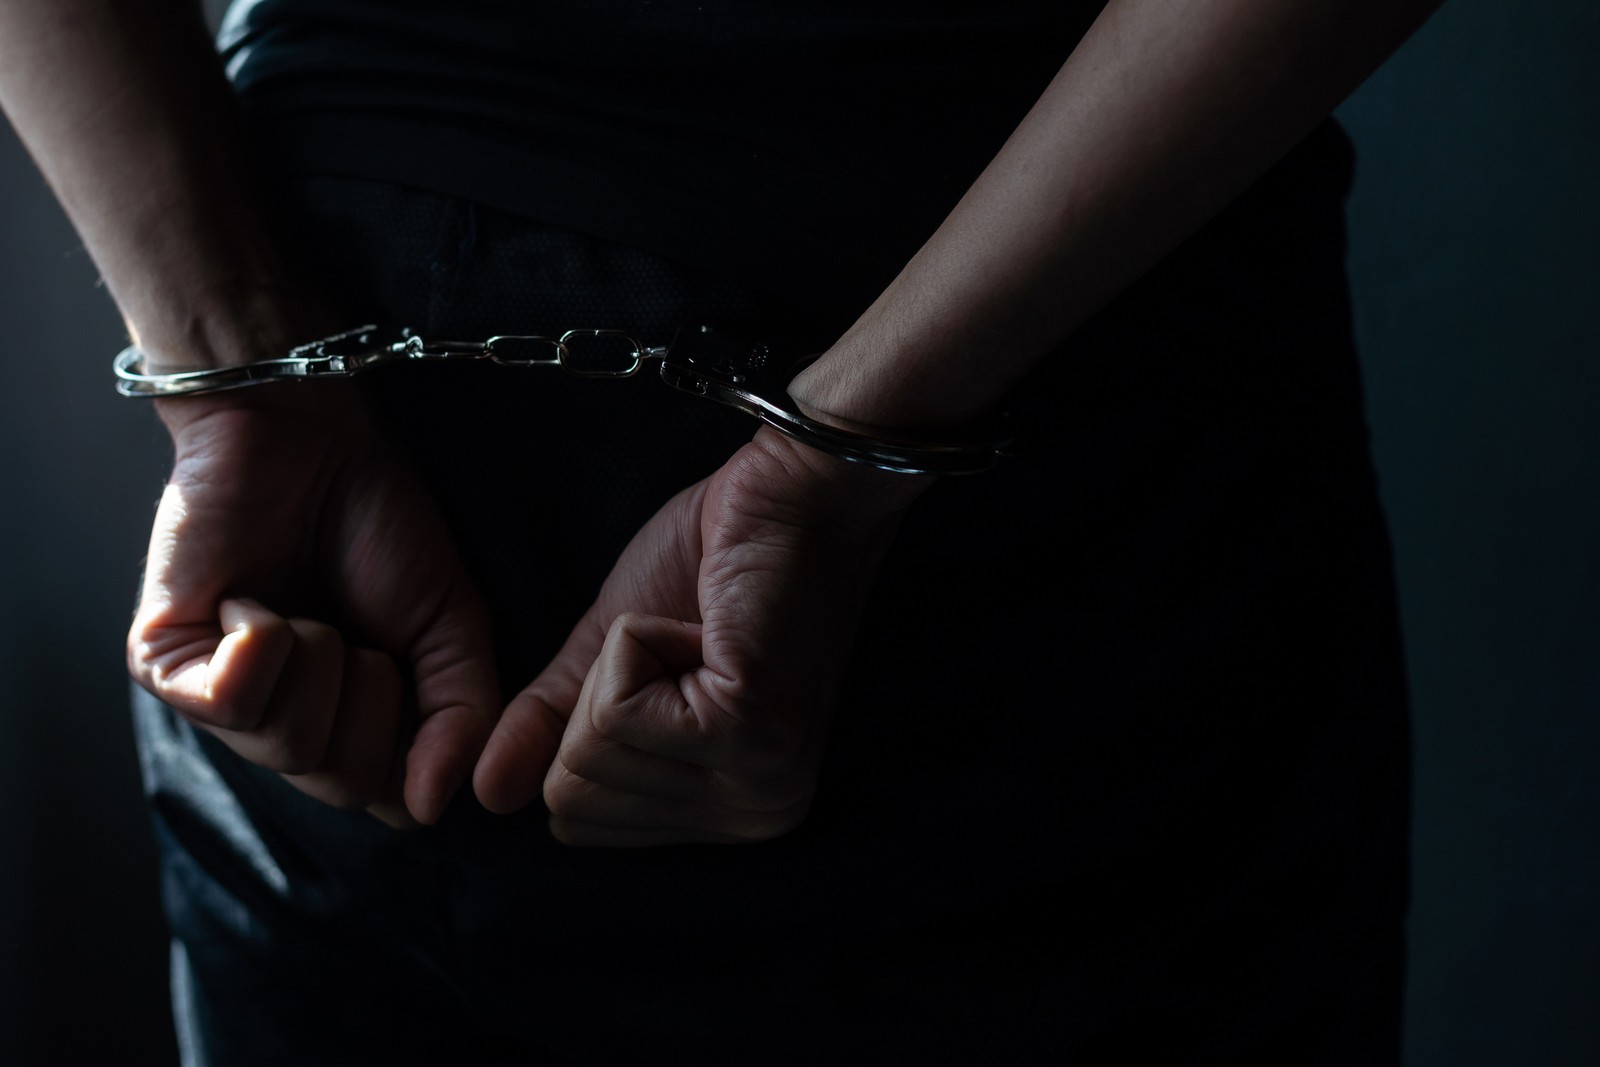 Κεφαλονιά: Συνελήφθησαν 2 ανήλικοι για απόπειρα κλοπής μετάλλων